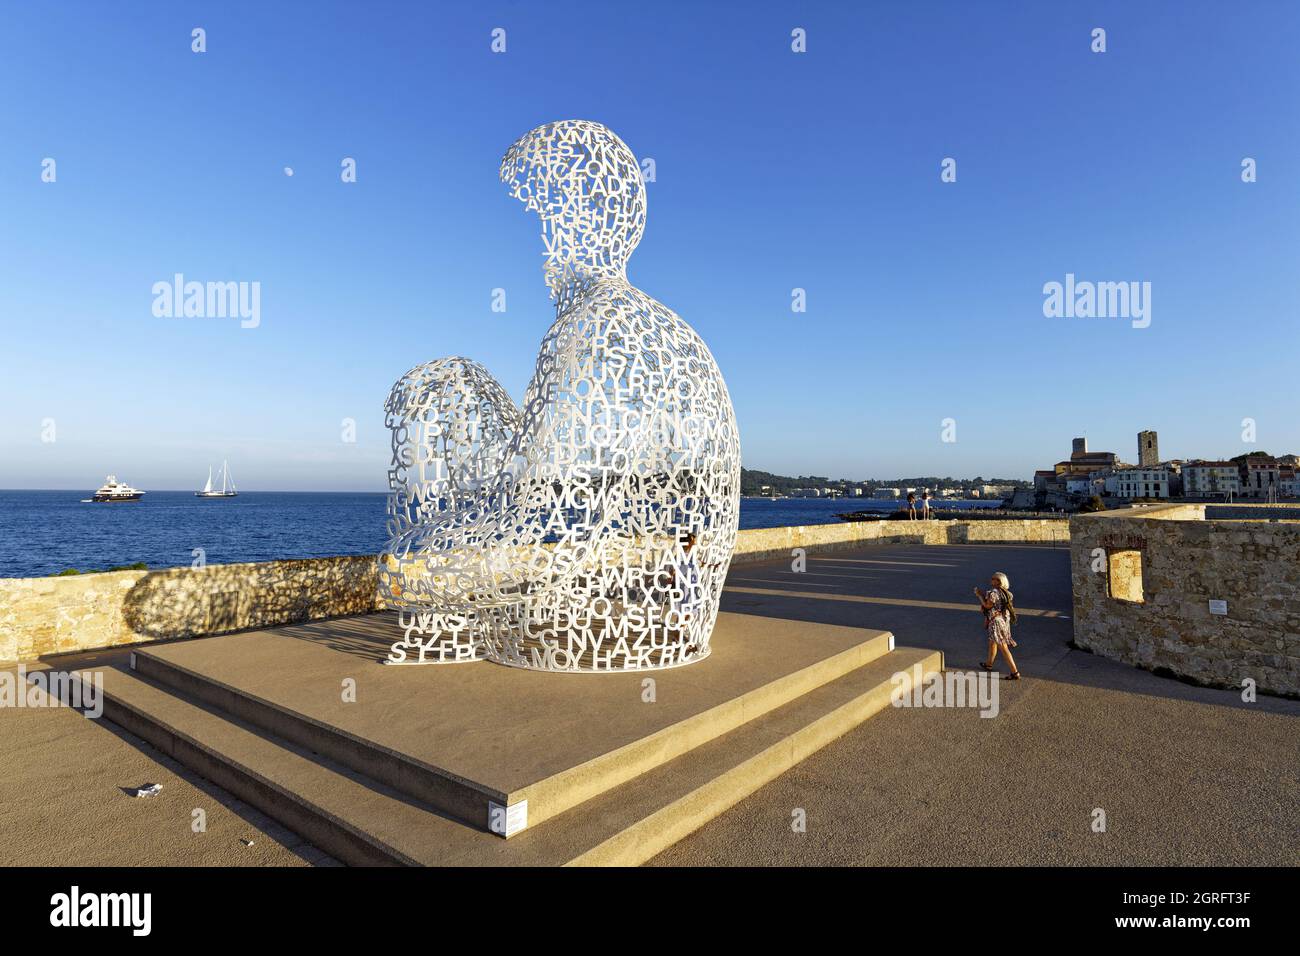 Francia, Alpes-Maritimes, Antibes, terraza del Bastión Saint-Jaume en el puerto Vauban, la escultura transparente el Nomad, creada por el escultor español Jaume Plensa, el busto formado por letras Foto de stock